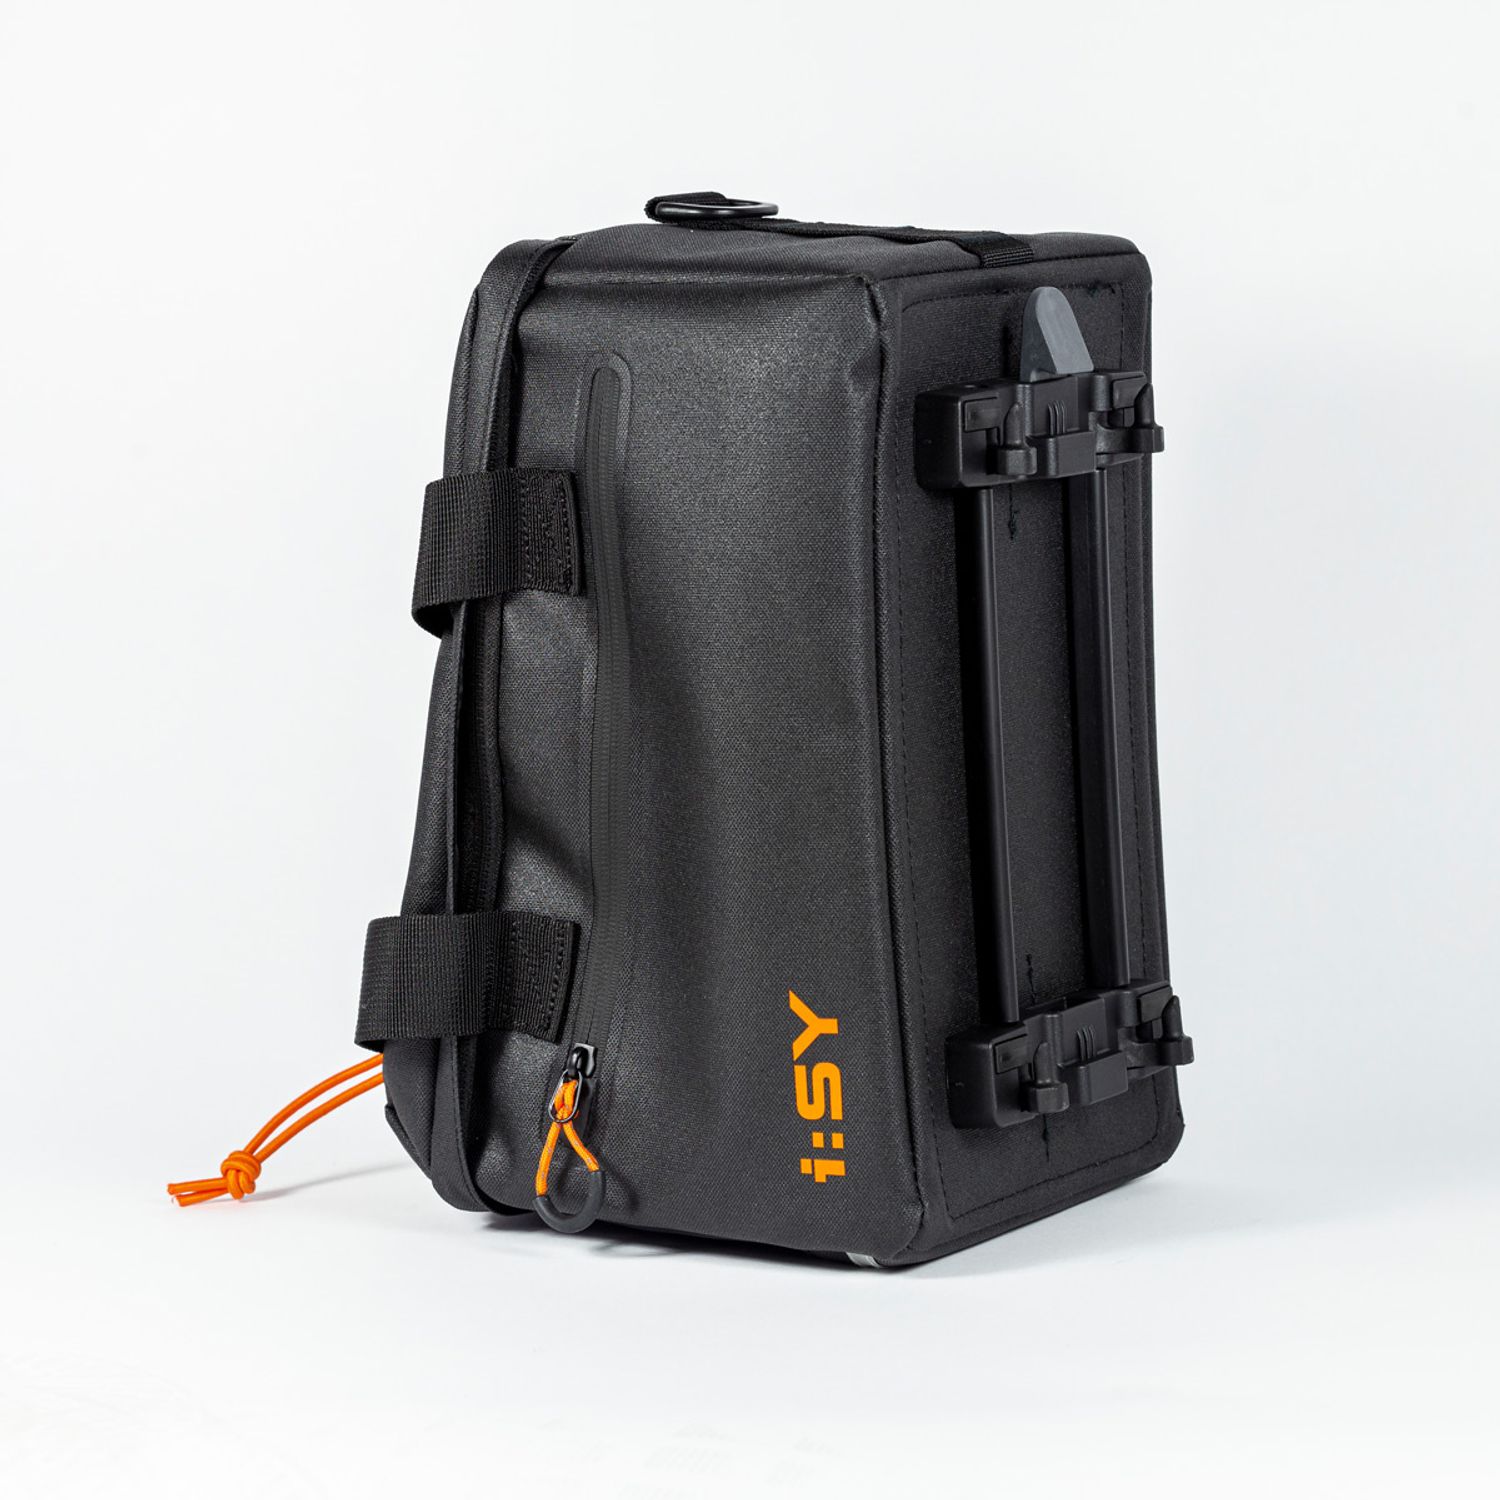 I:SY Racktime "Trunk-Bag" Gepäckträgertasche - nur für Modelljahre bis 2021 kompatibel